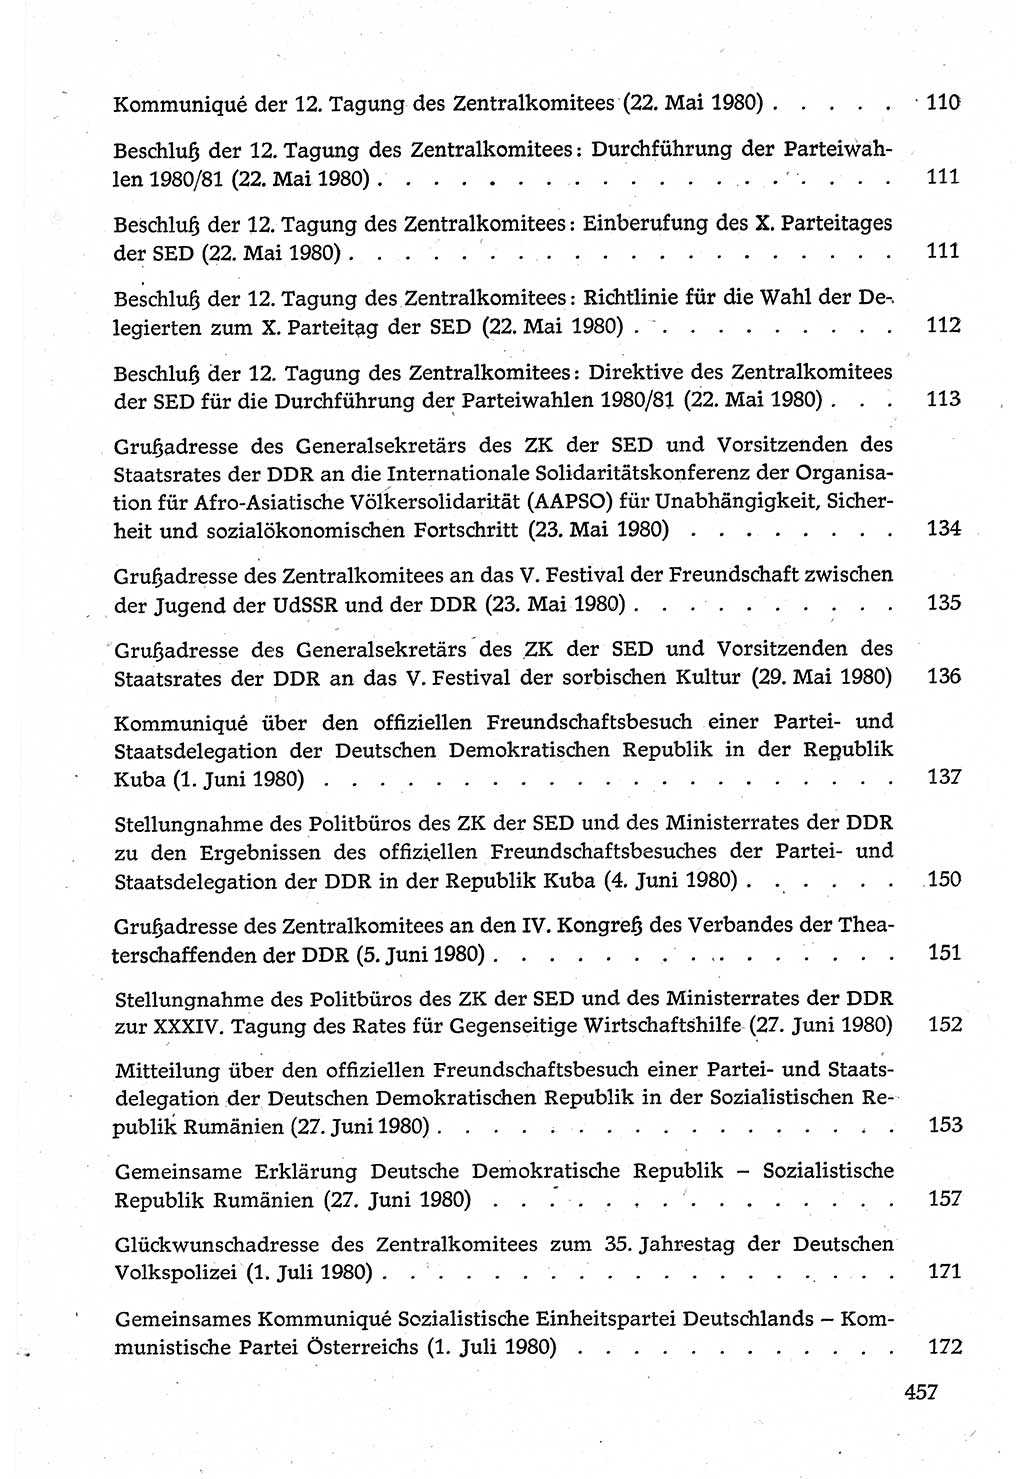 Dokumente der Sozialistischen Einheitspartei Deutschlands (SED) [Deutsche Demokratische Republik (DDR)] 1980-1981, Seite 457 (Dok. SED DDR 1980-1981, S. 457)